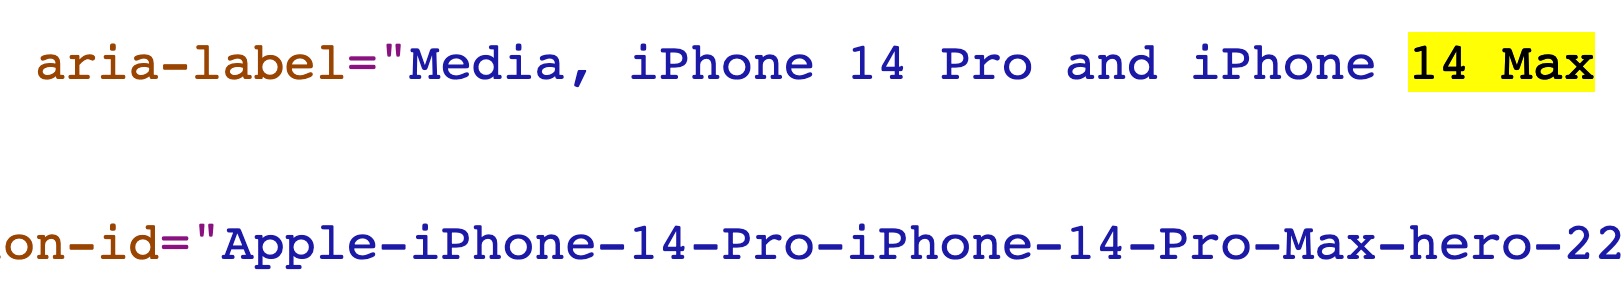 Mención al iPhone 14 Max en lugar de iPhone 14 Plus